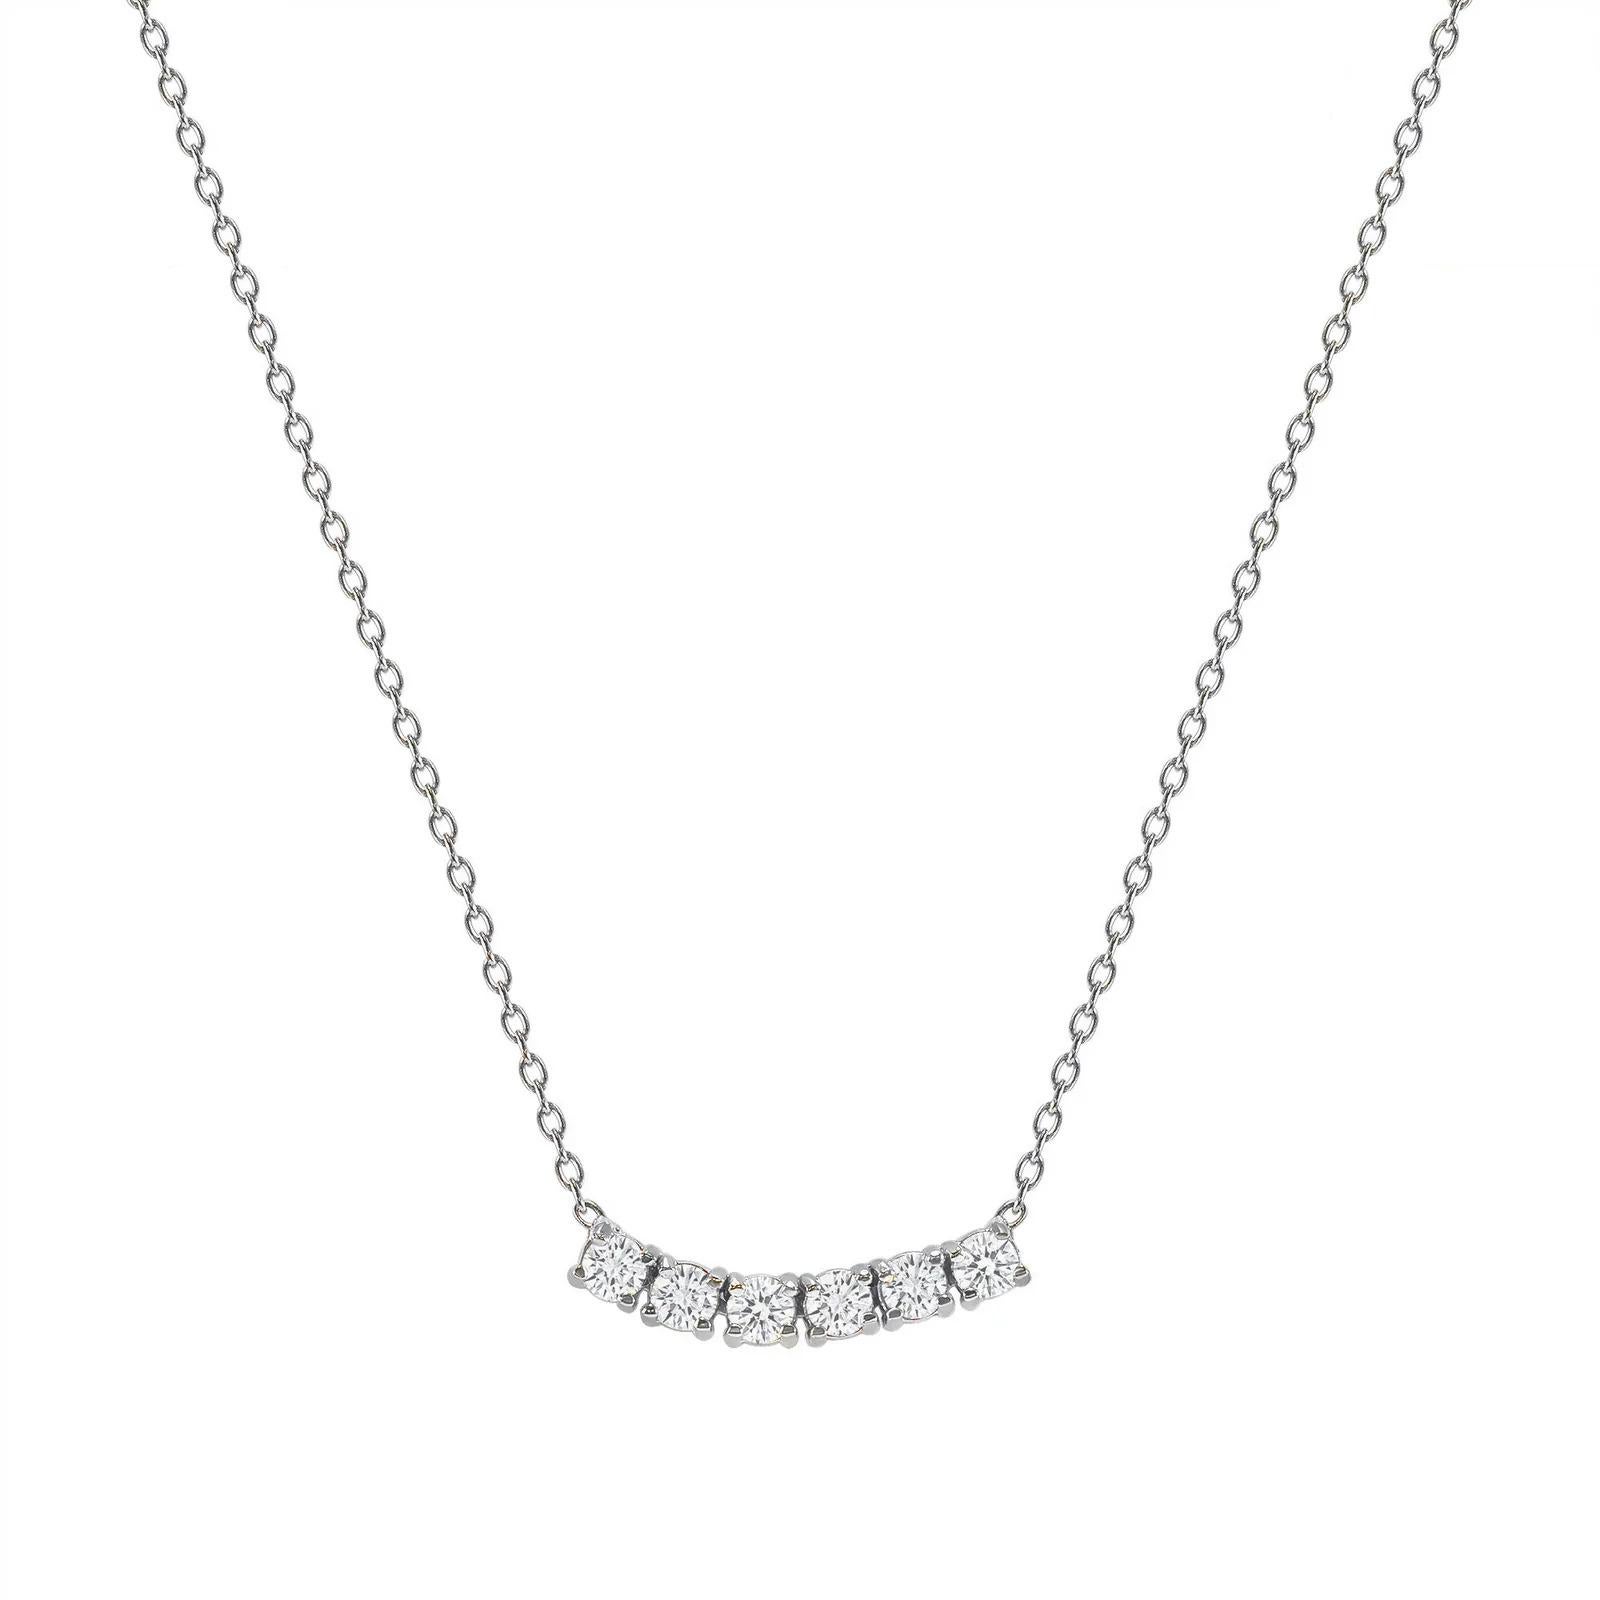 Diese zierliche, geschwungene Diamant-Halskette ist aus wunderschönem 14-karätigem Gold gefertigt und mit sechs runden Diamanten besetzt.  

Gold: 14k 
Diamant Total Karat: 1ct
Diamant-Schliff: Rund (6 Diamanten)
Diamant Reinheit: VS
Diamant-Farbe: